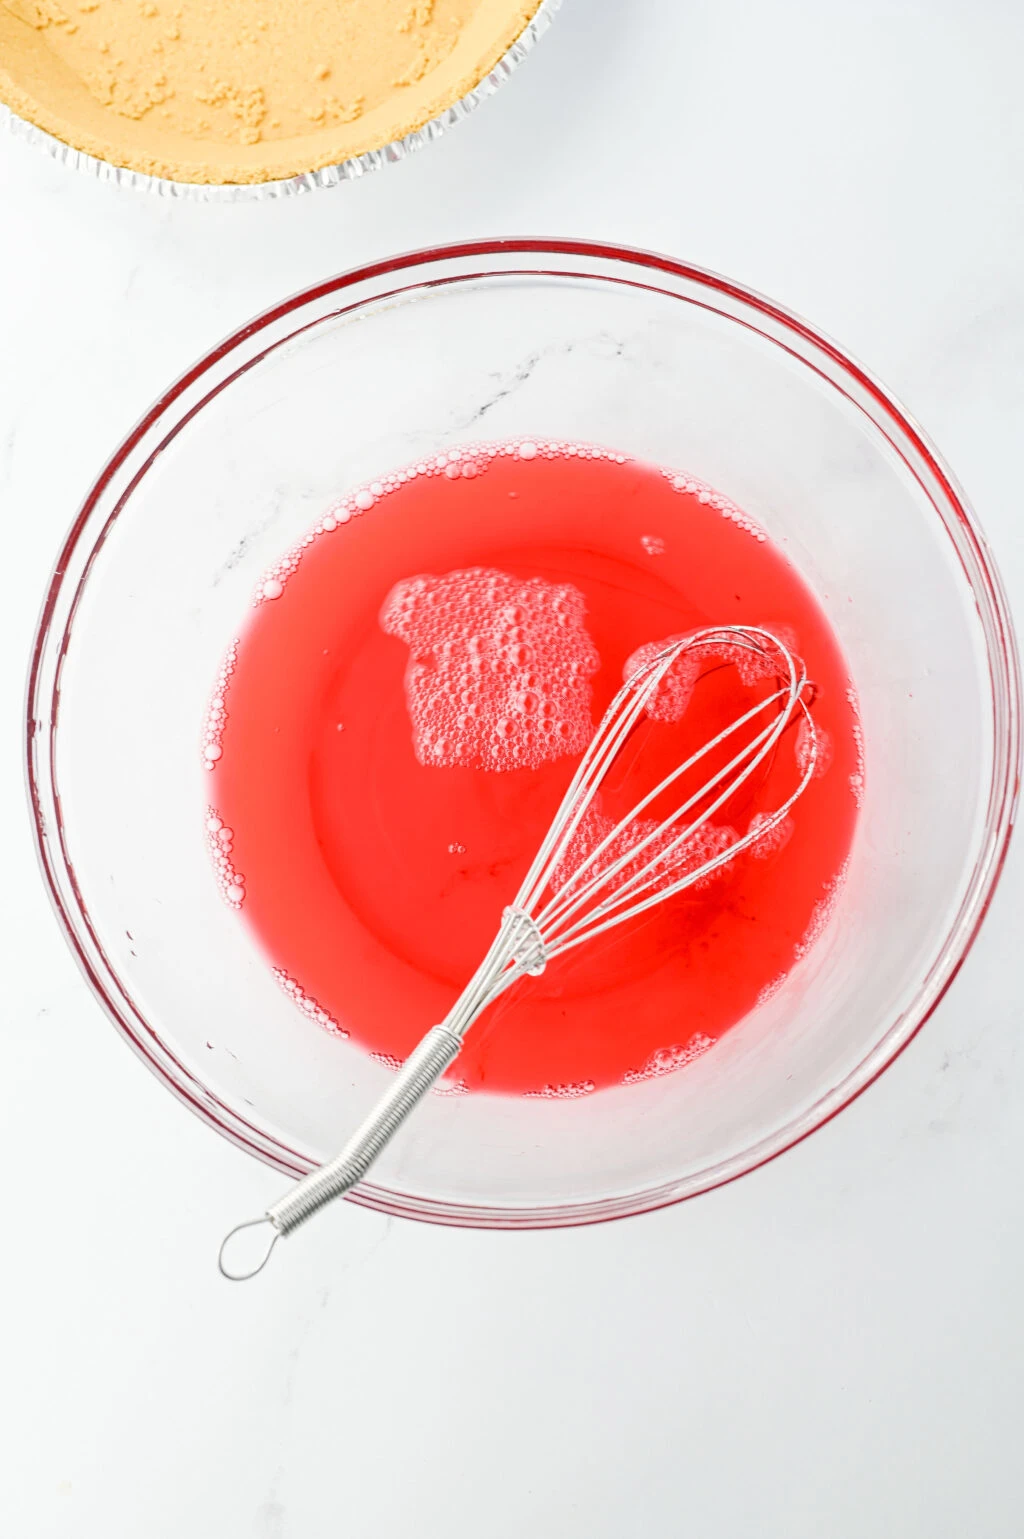 strawberry jello in water